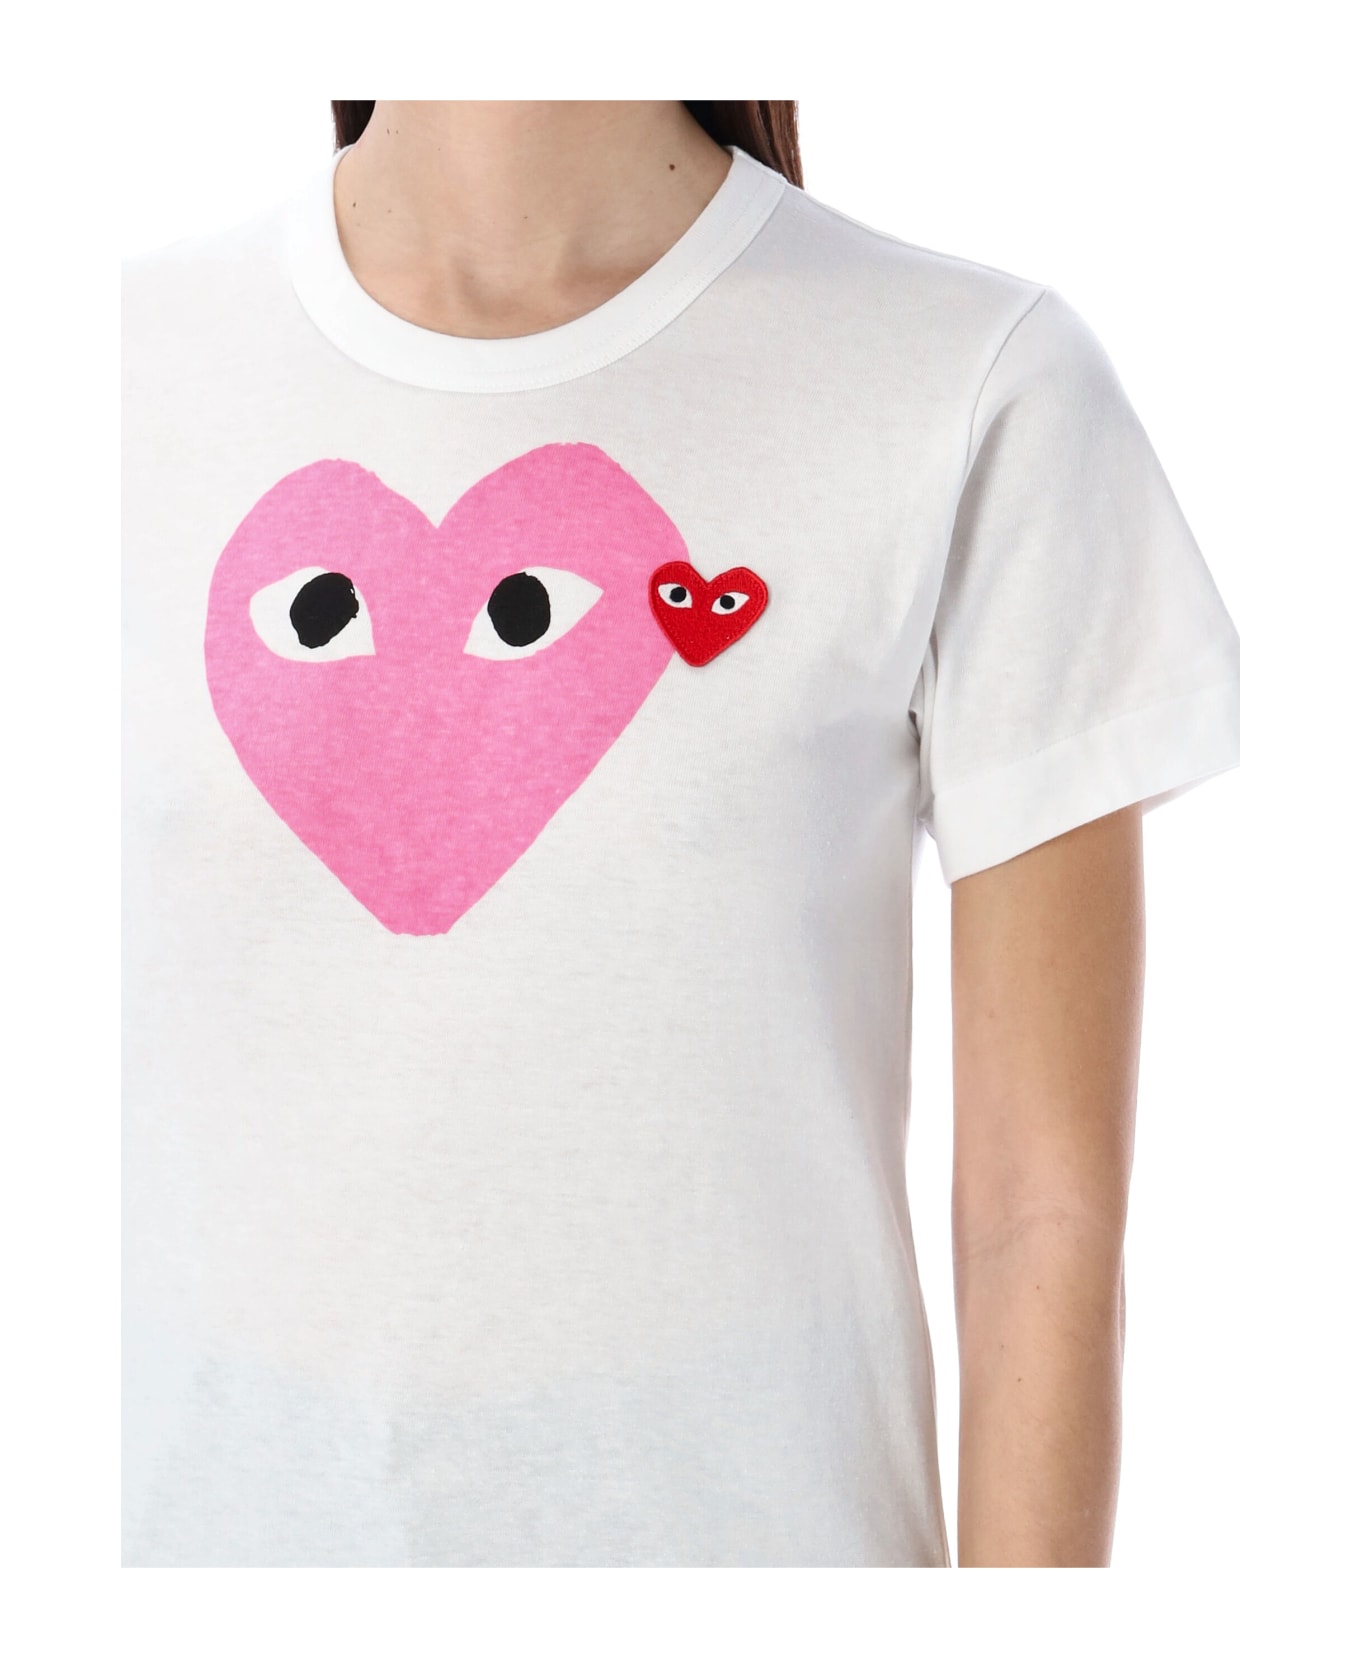 Comme des Garçons Play Big Pink Heart T-shirt - WHITE PINK